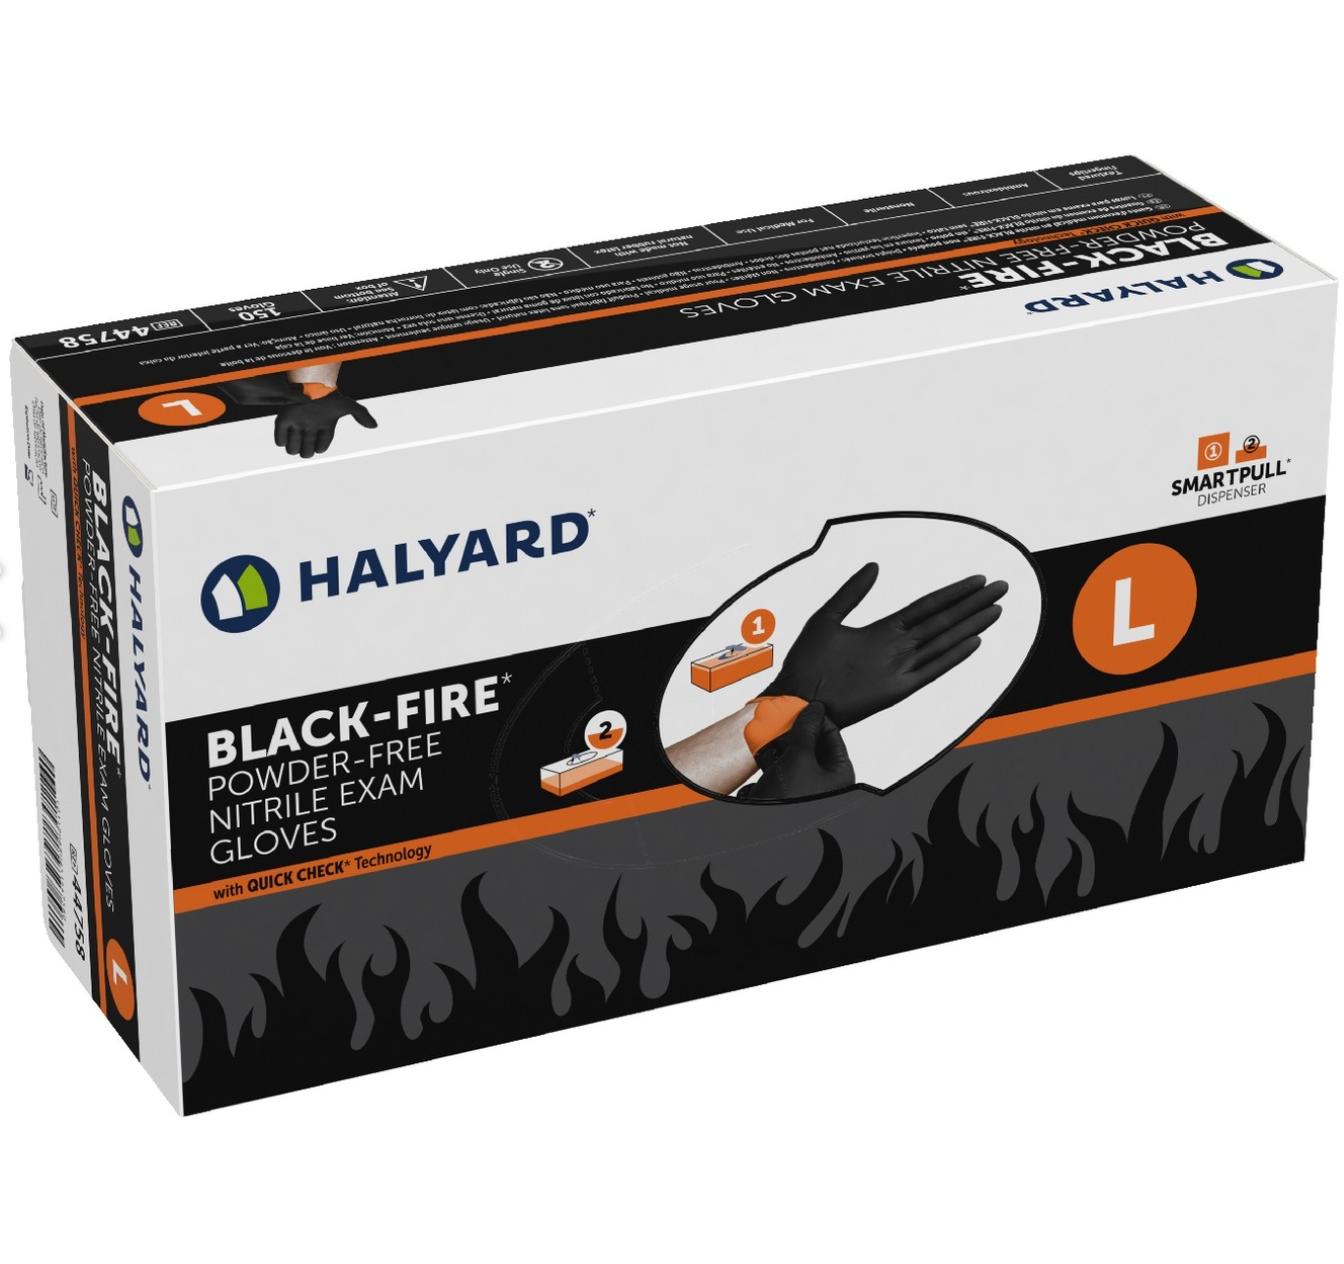 HALYARD* BLACK-FIRE* NITRILE EXAM GLOVES BOX